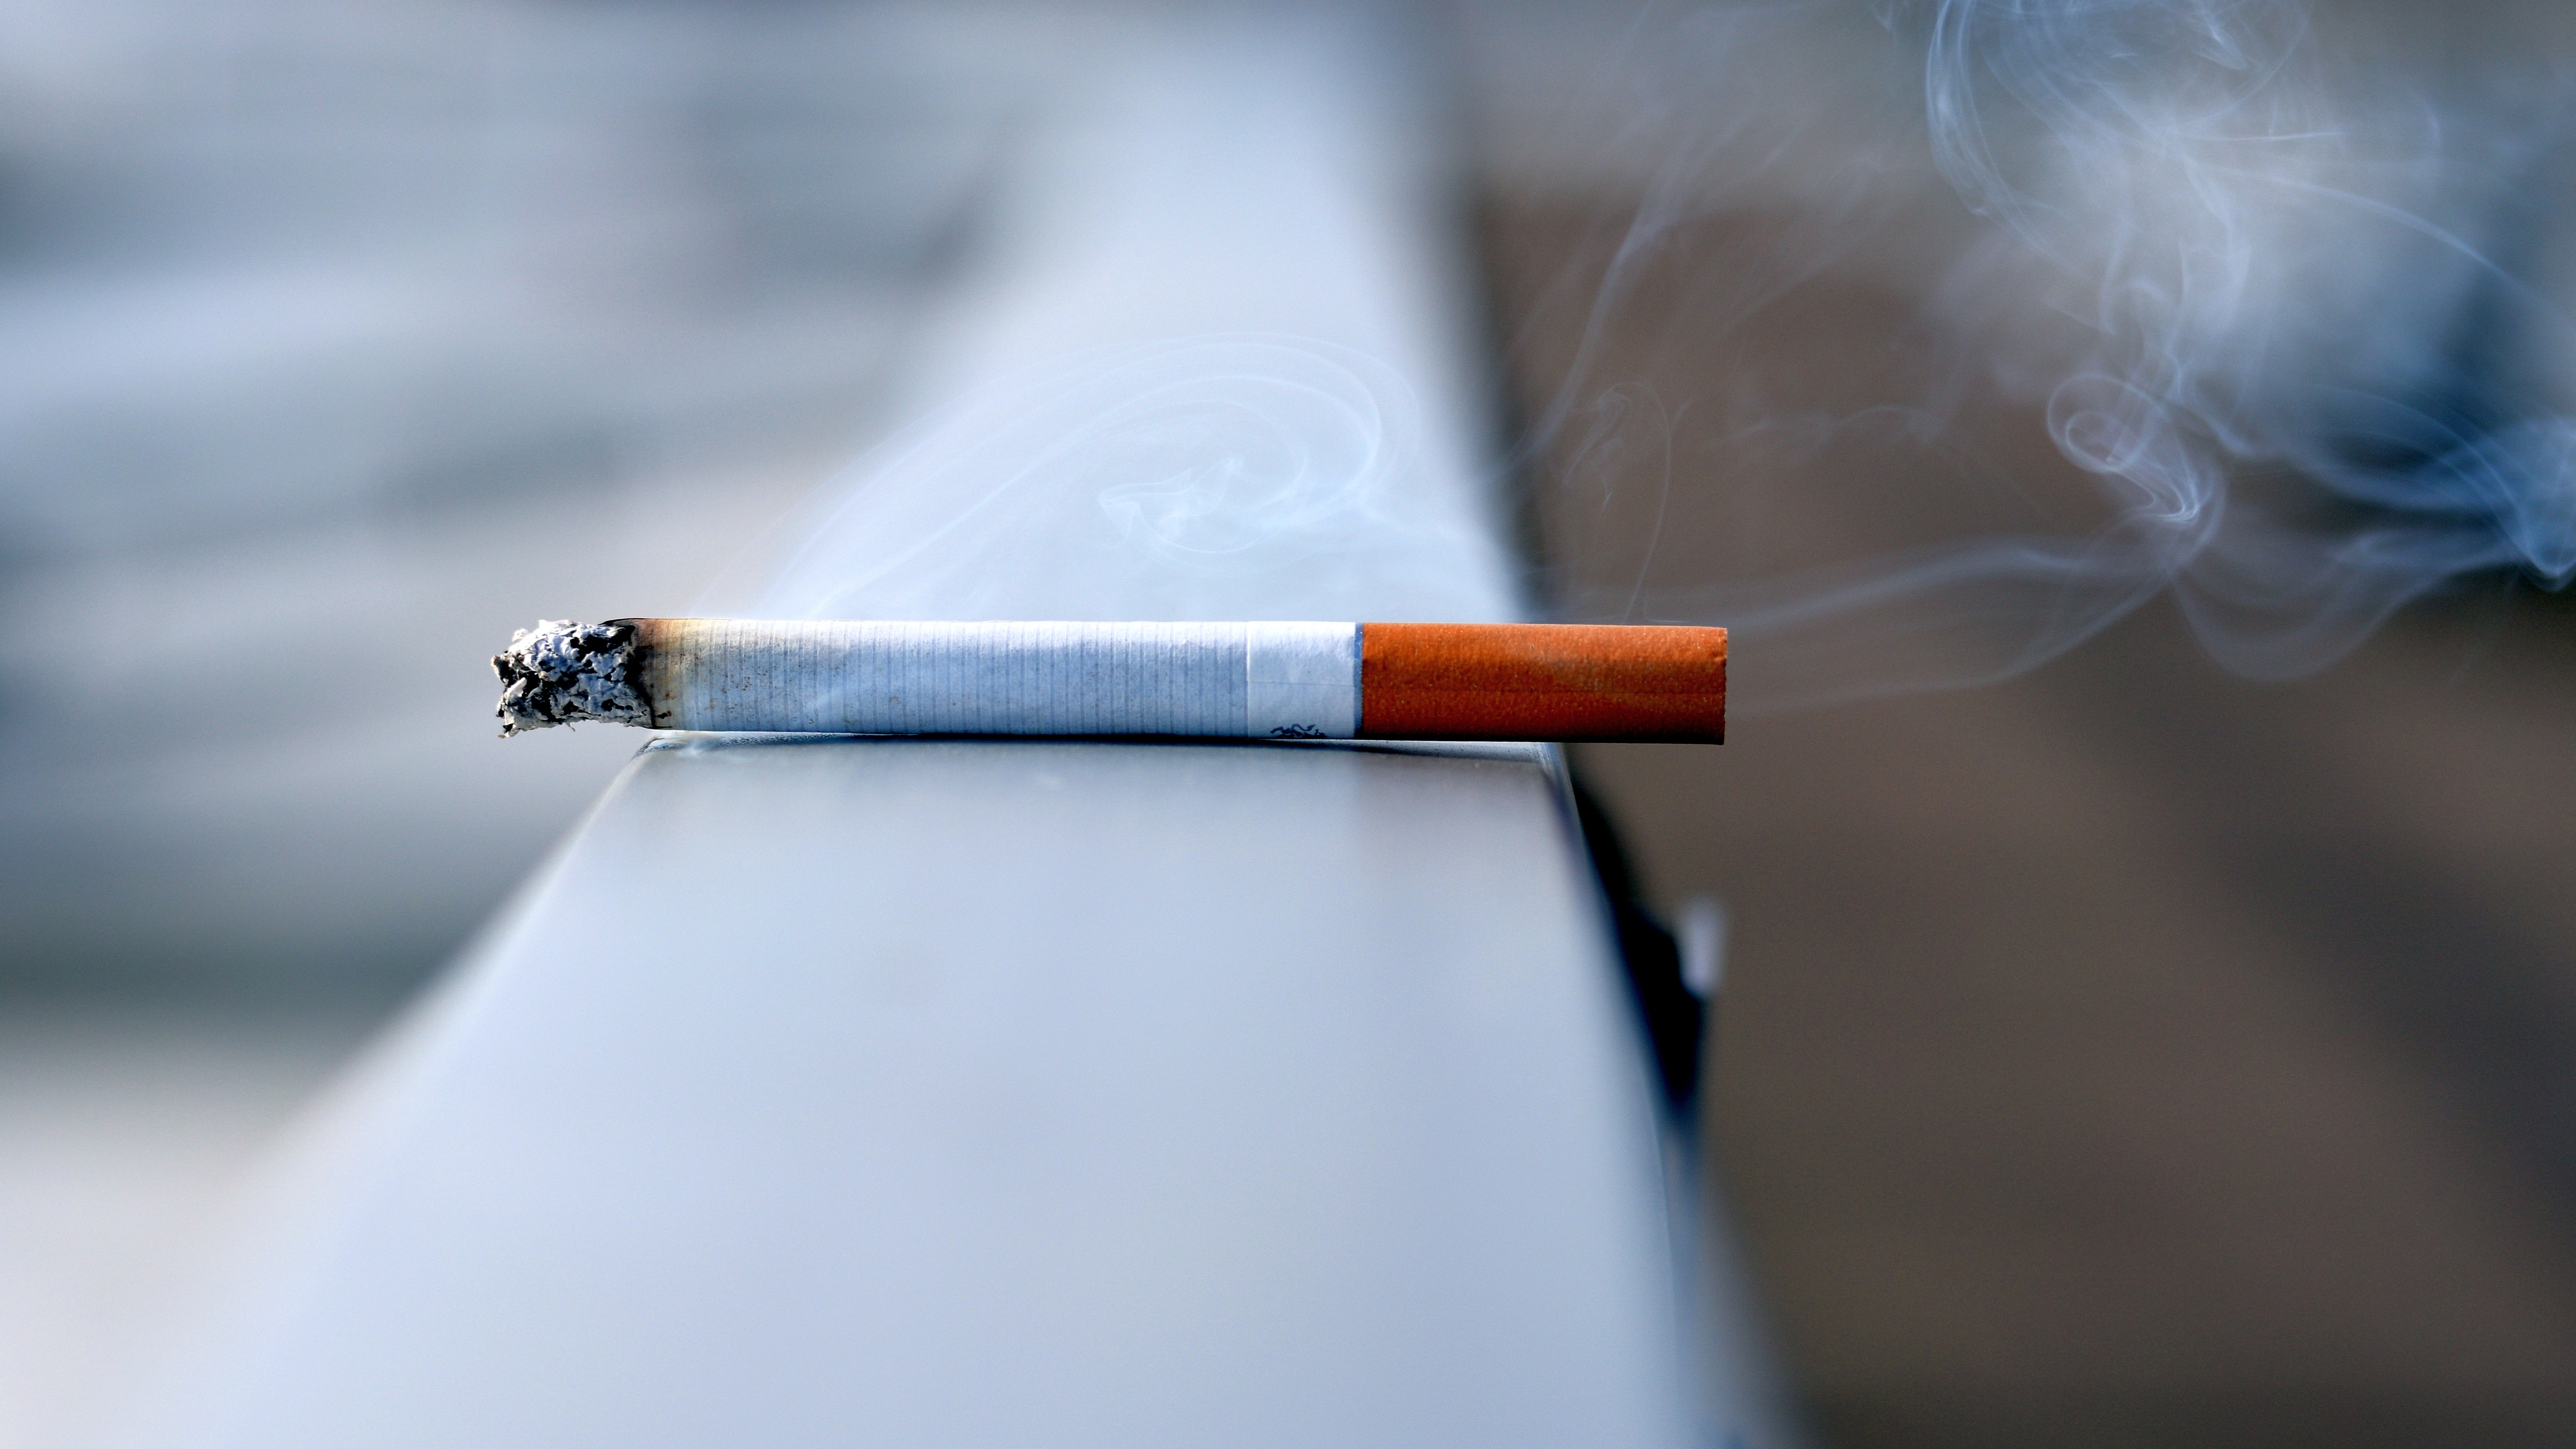 Endlich rauchfrei - Tipps vom Göttinger Experten zum